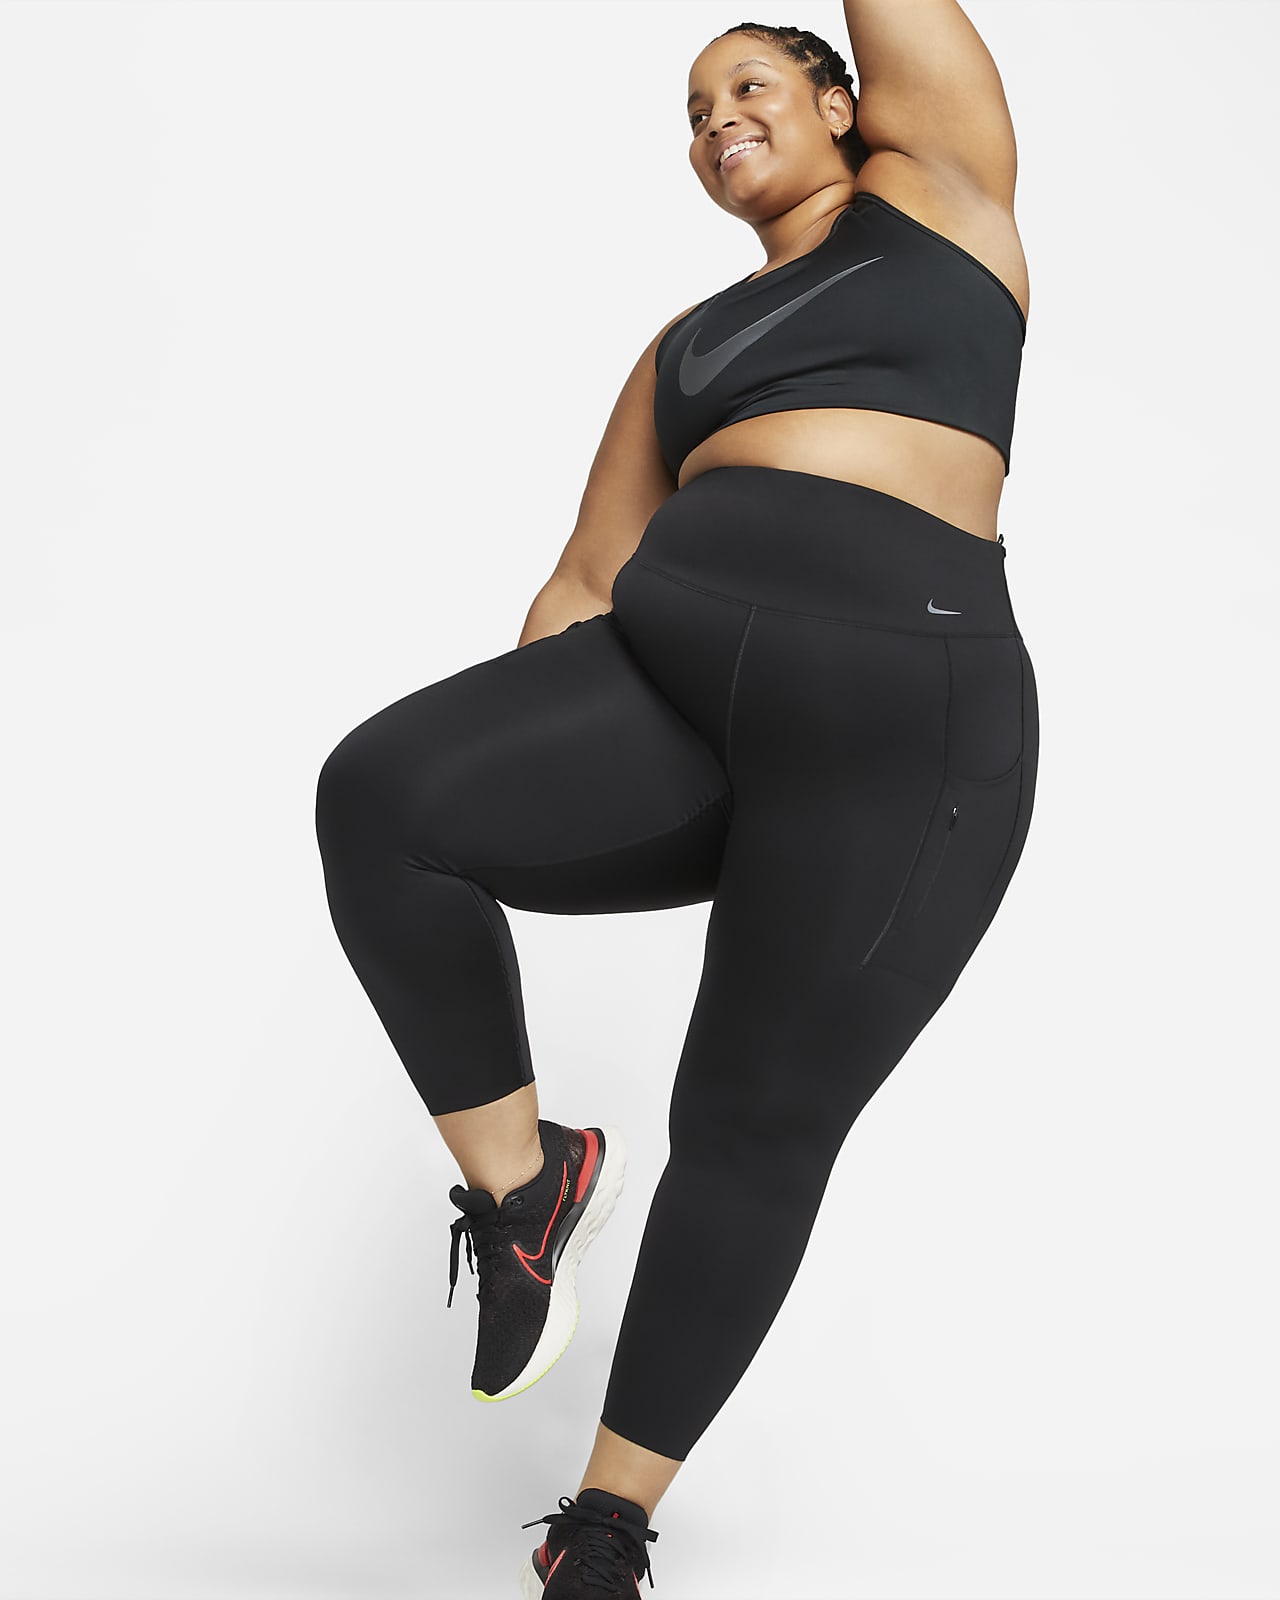 Nike Go 女款緊密支撐型高腰口袋九分內搭褲 (加大尺寸)